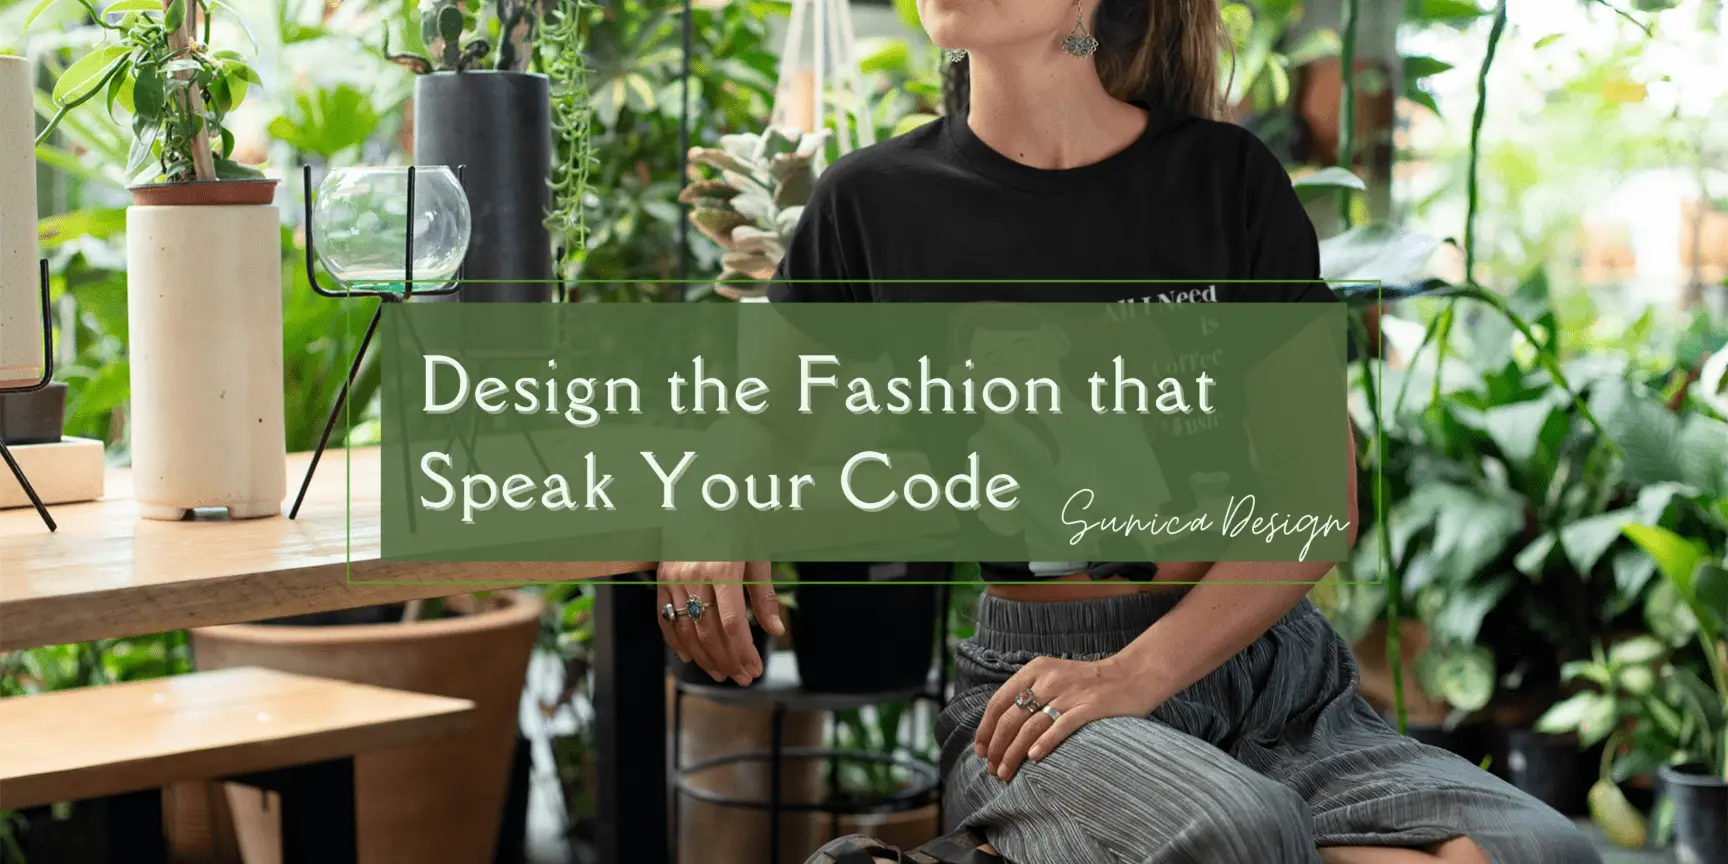 Slogan - Design the Fashion that Speak Your Code